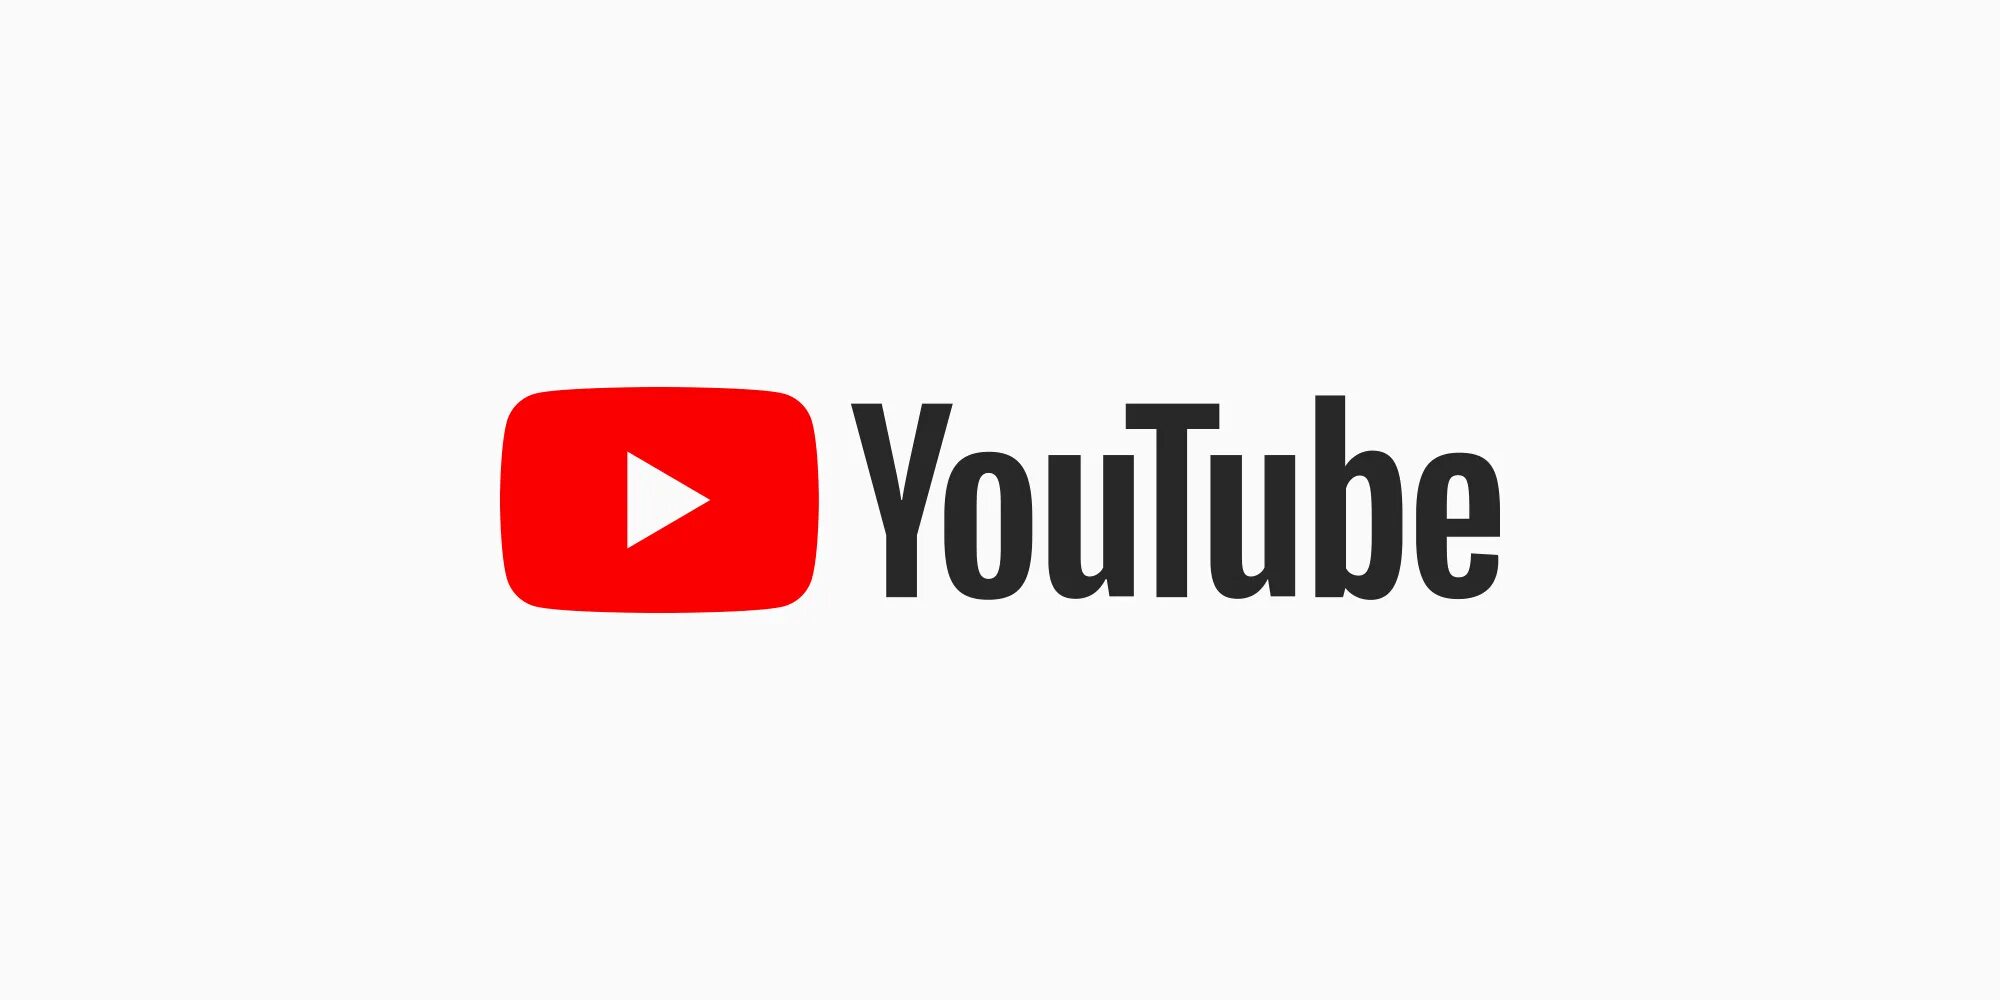 Последний версия youtube без рекламы. Логотип ютуб. YOUTUBER. Youtube э. Ютуюююююююююююююююююююююююююююююююююююю.